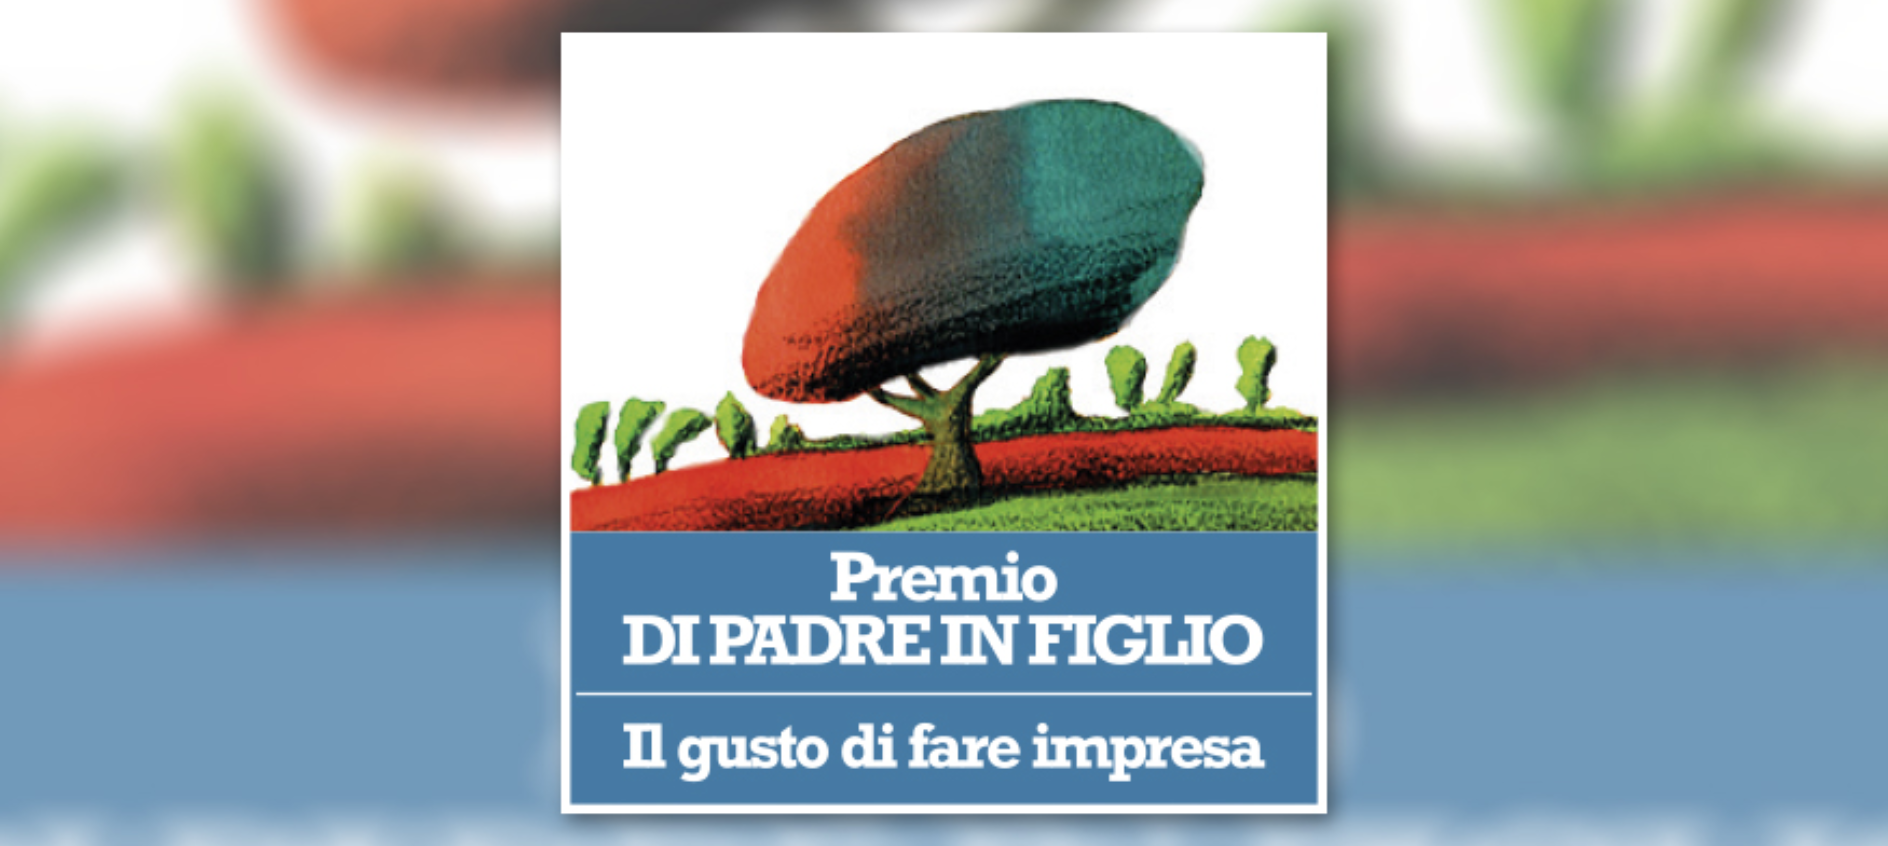 Glasford International Italy è promotore del Premio Di Padre in Figlio